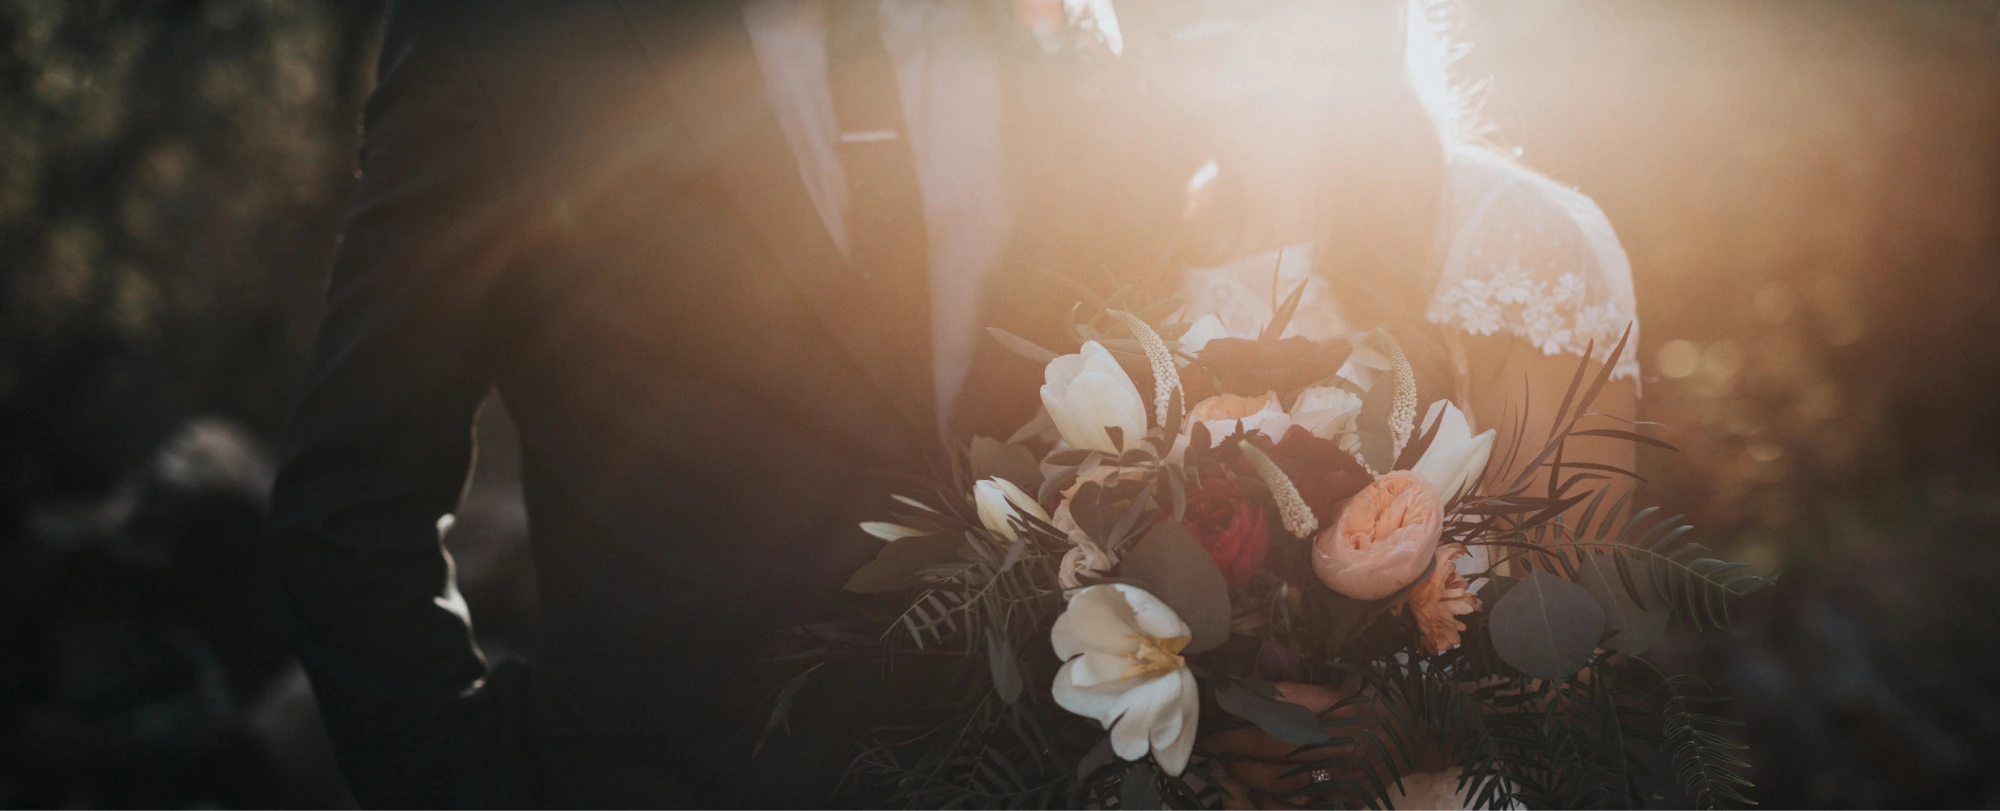 زوجان يتزوجان في صورة زفاف مع باقة زهور